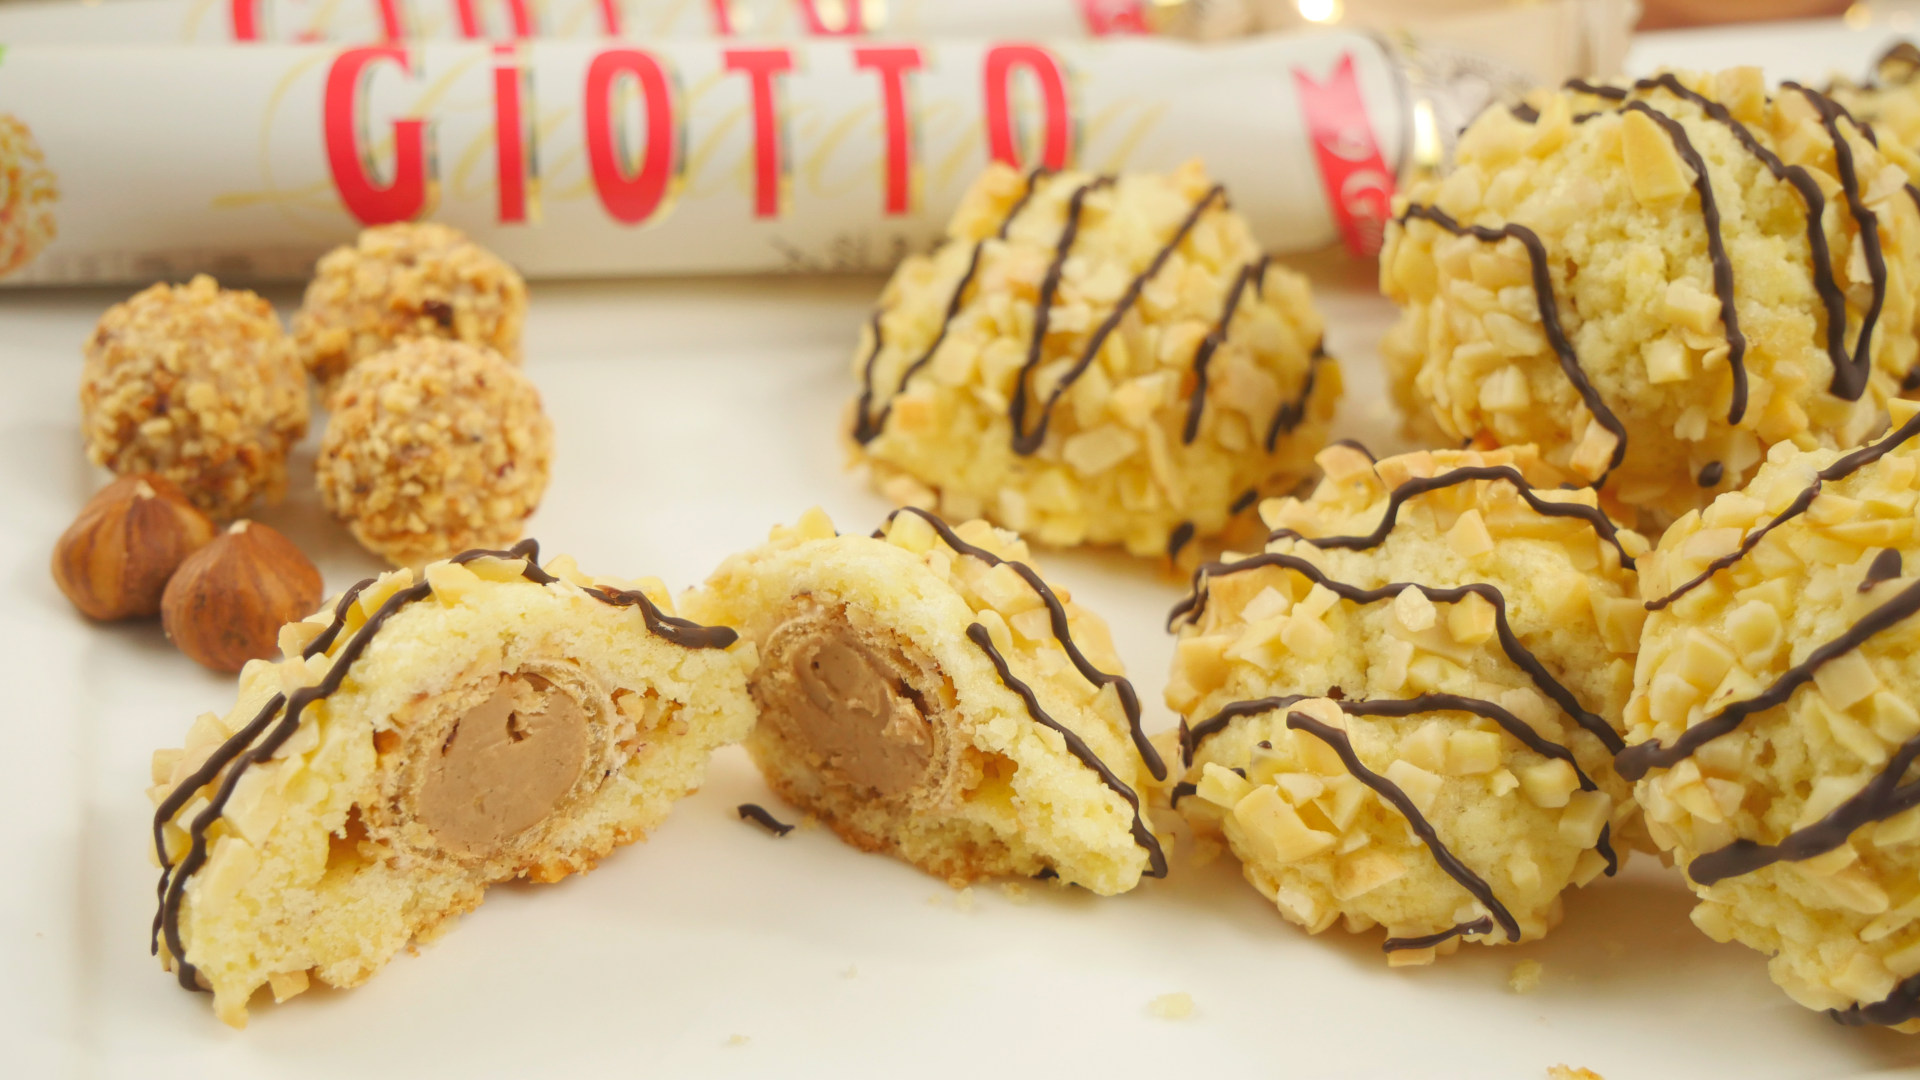 Rezept: Giotto® Kekse - Knusperkugeln gefüllt mit Giotto®